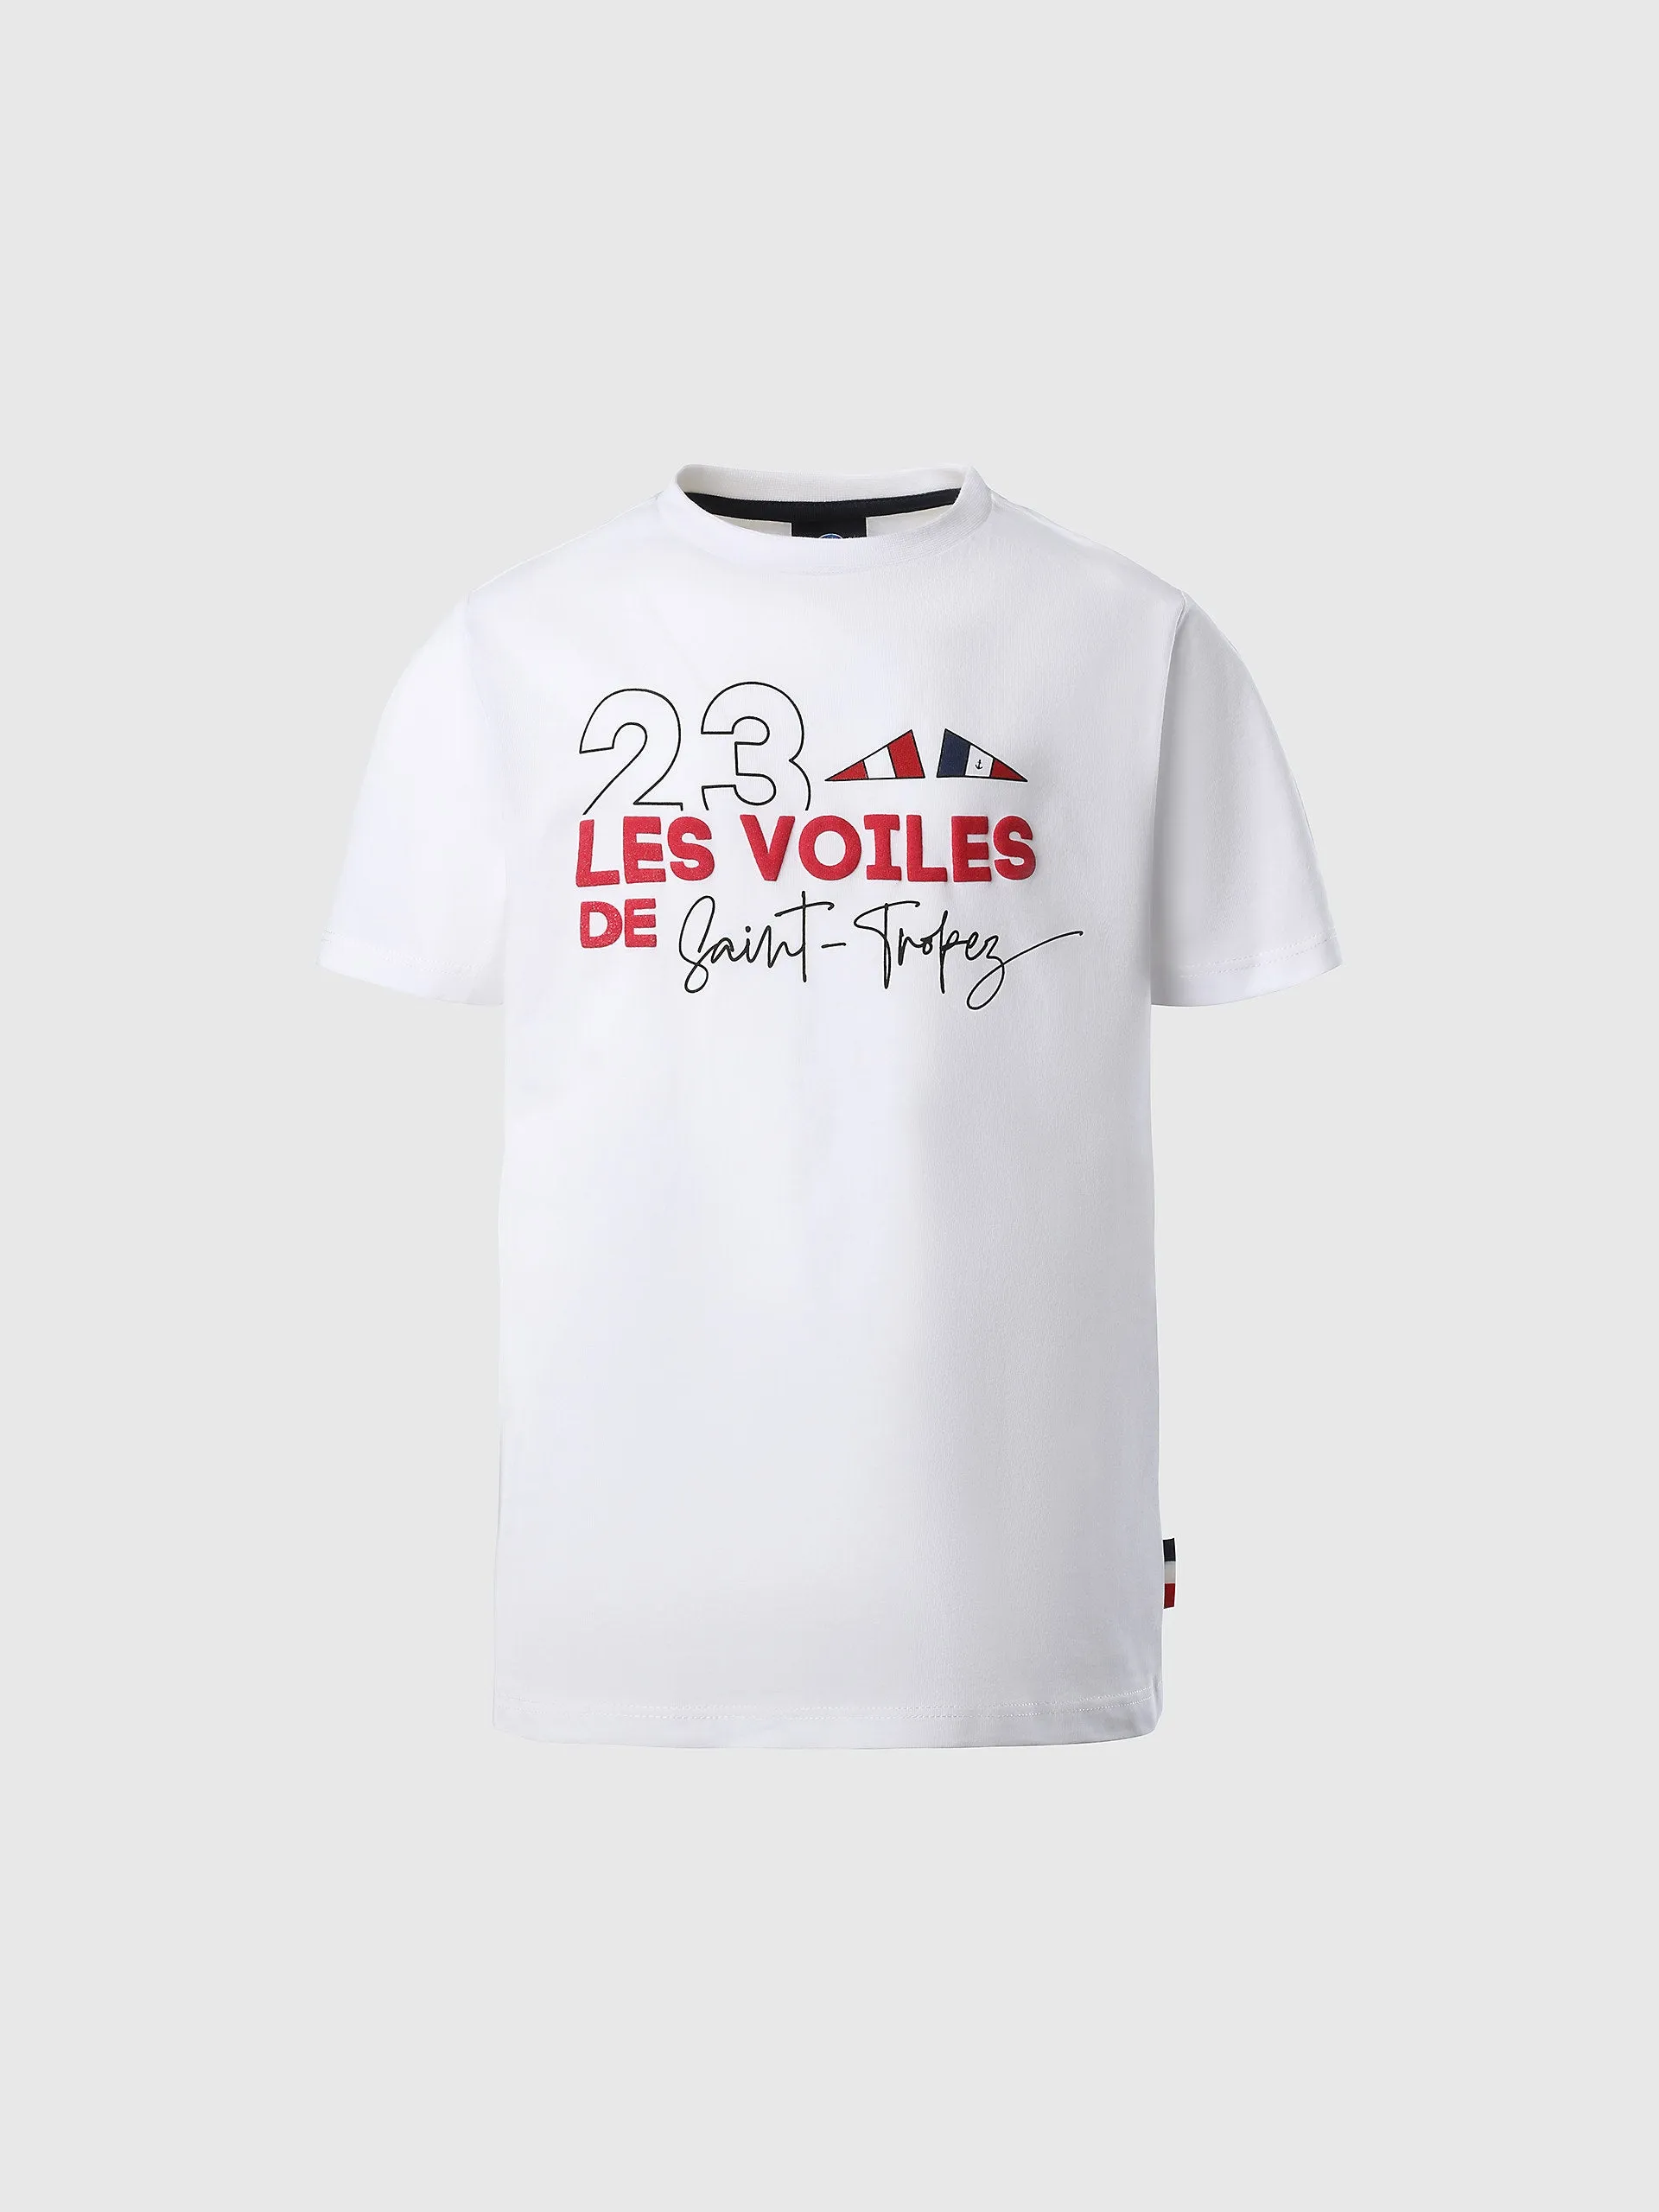  - Saint-Tropez T-shirtWhite10